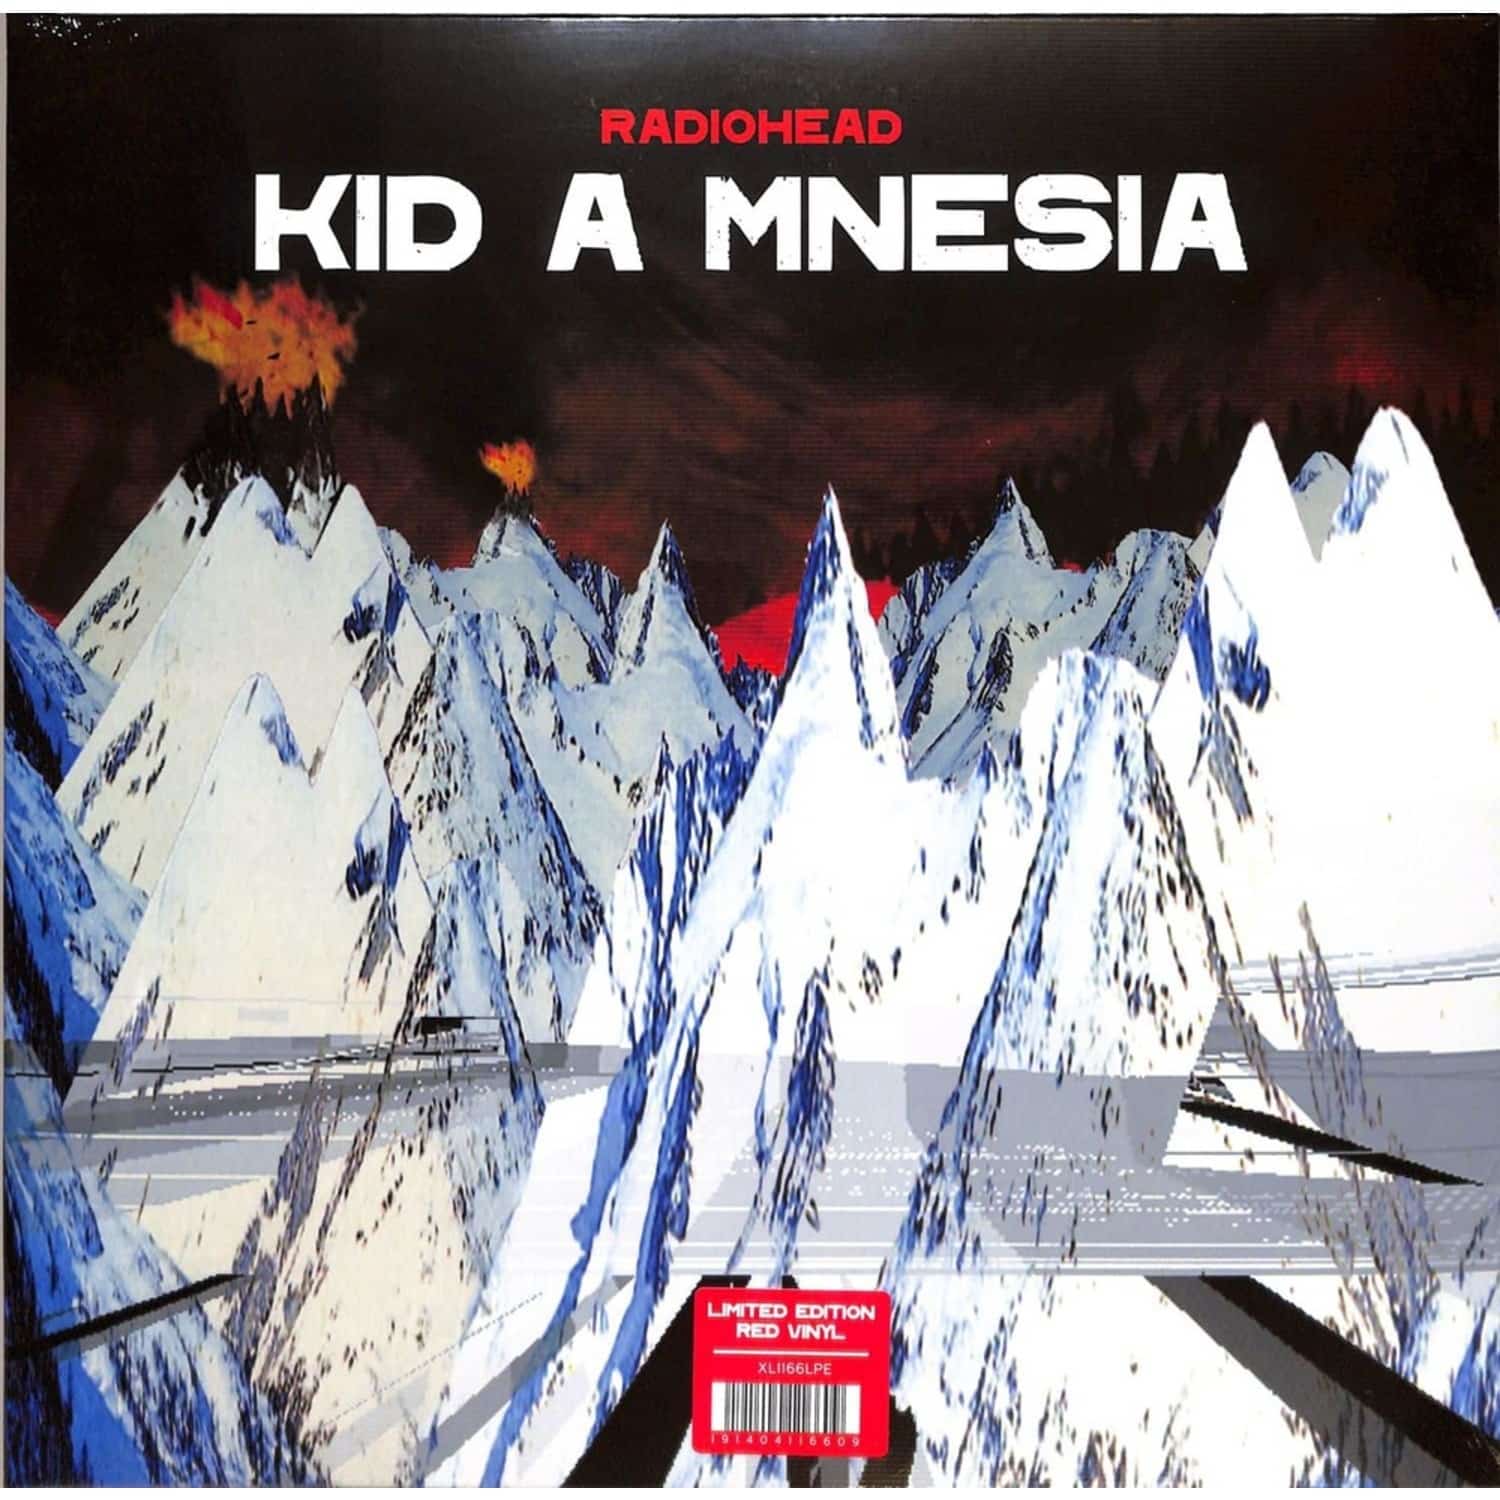 Radiohead - KID A MNESIA 